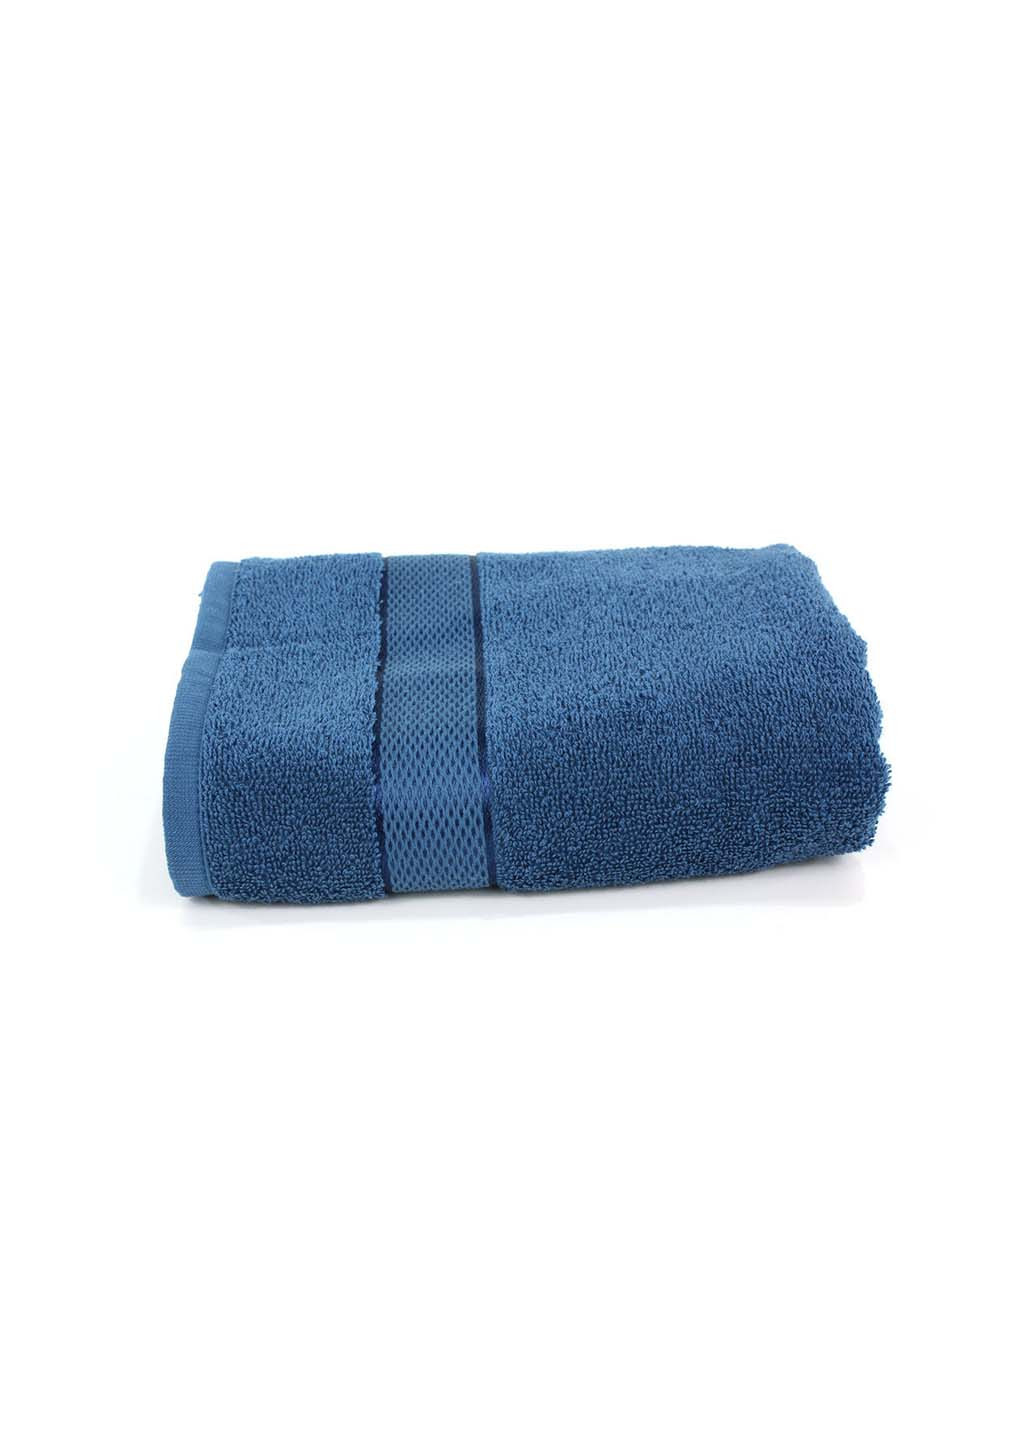 Еней-Плюс полотенце махровое бс0015 100х150 синий производство - Украина